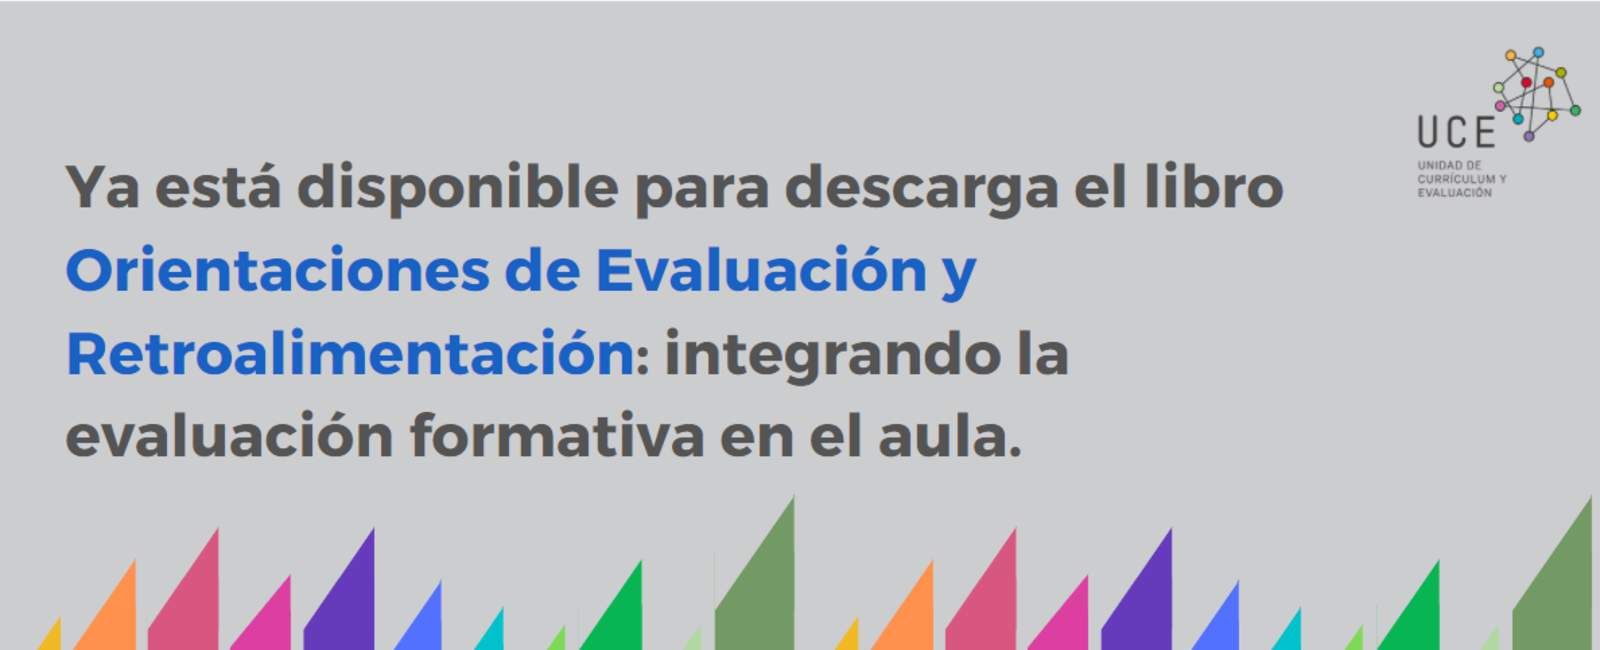 Ya está disponible para descarga el libro Orientaciones de Evaluación y Retroalimentación: integrando la evaluación formativa en el aula